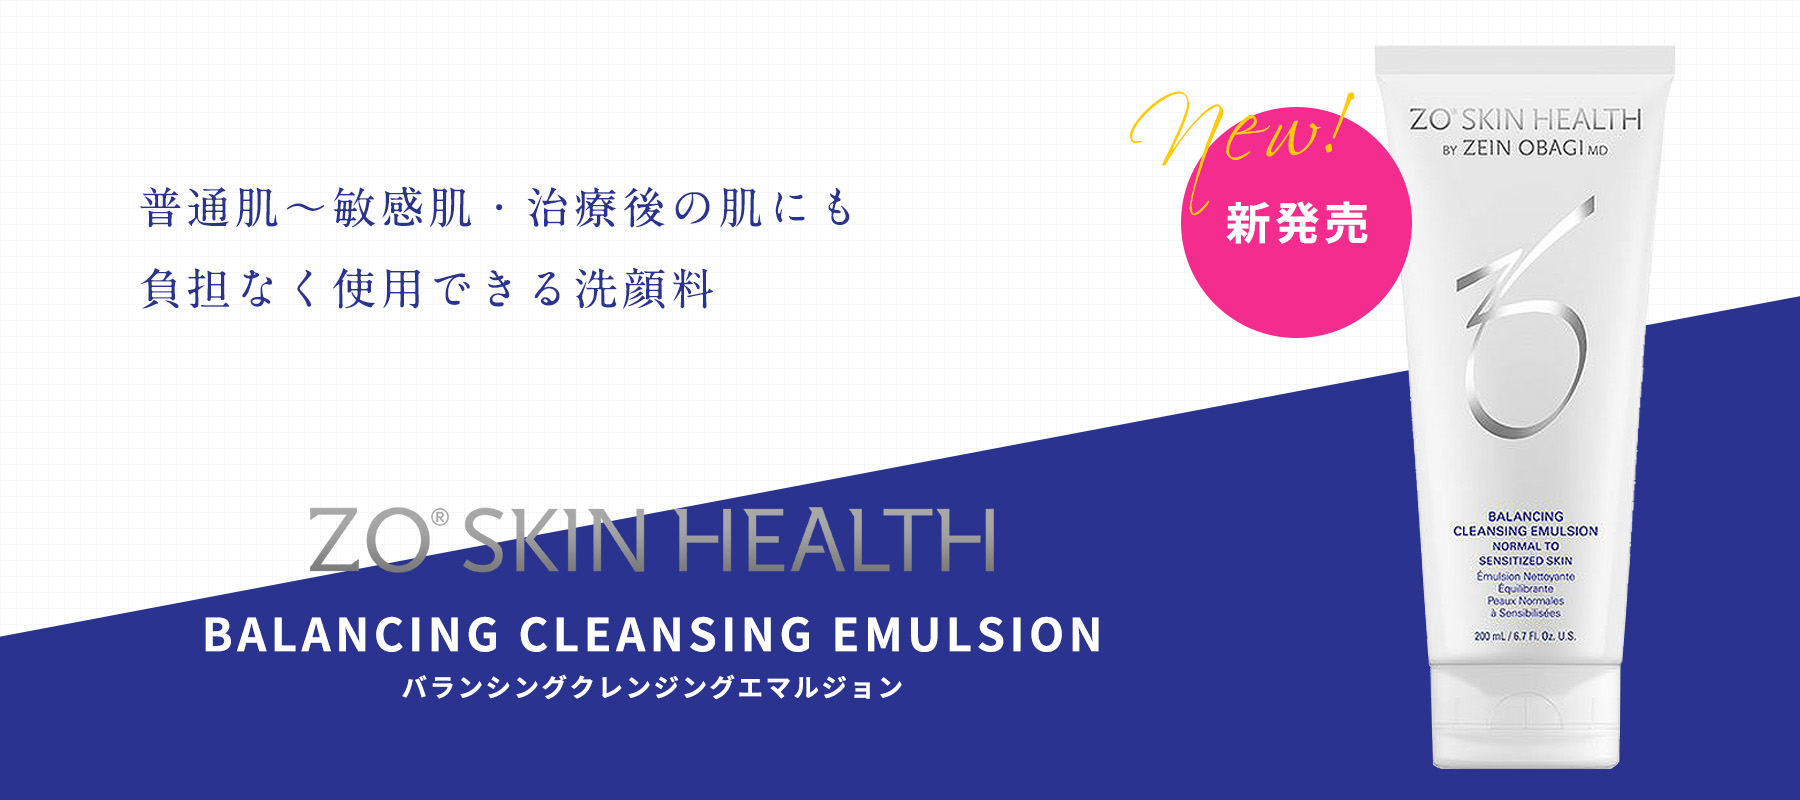 新商品BALANCING CLEANSING EMULSION2.jpg